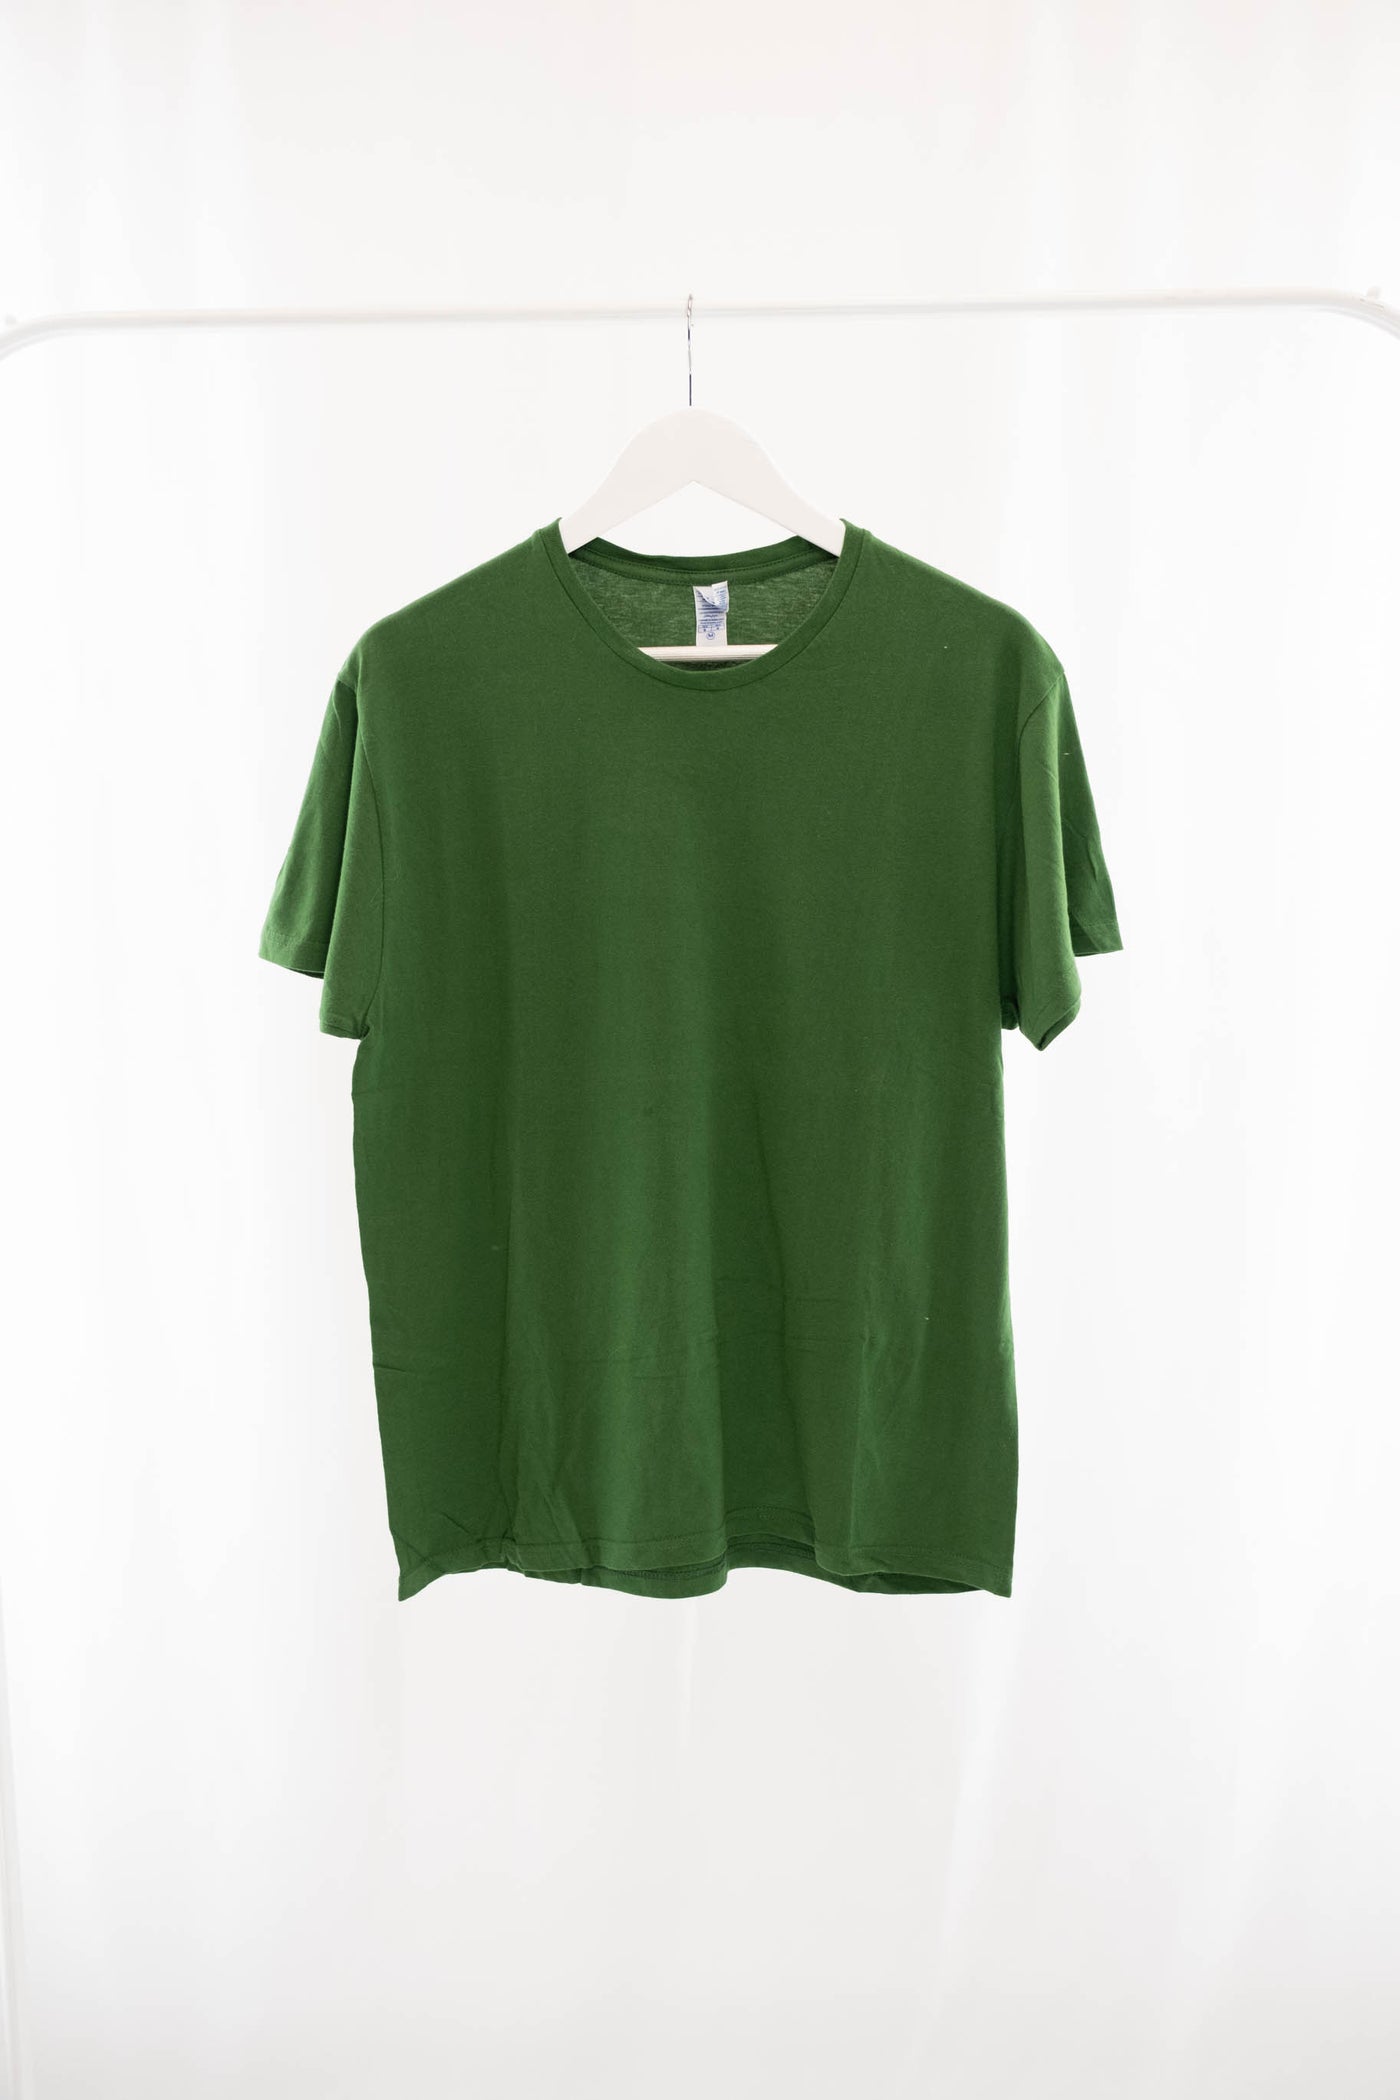 Camiseta verde estampado